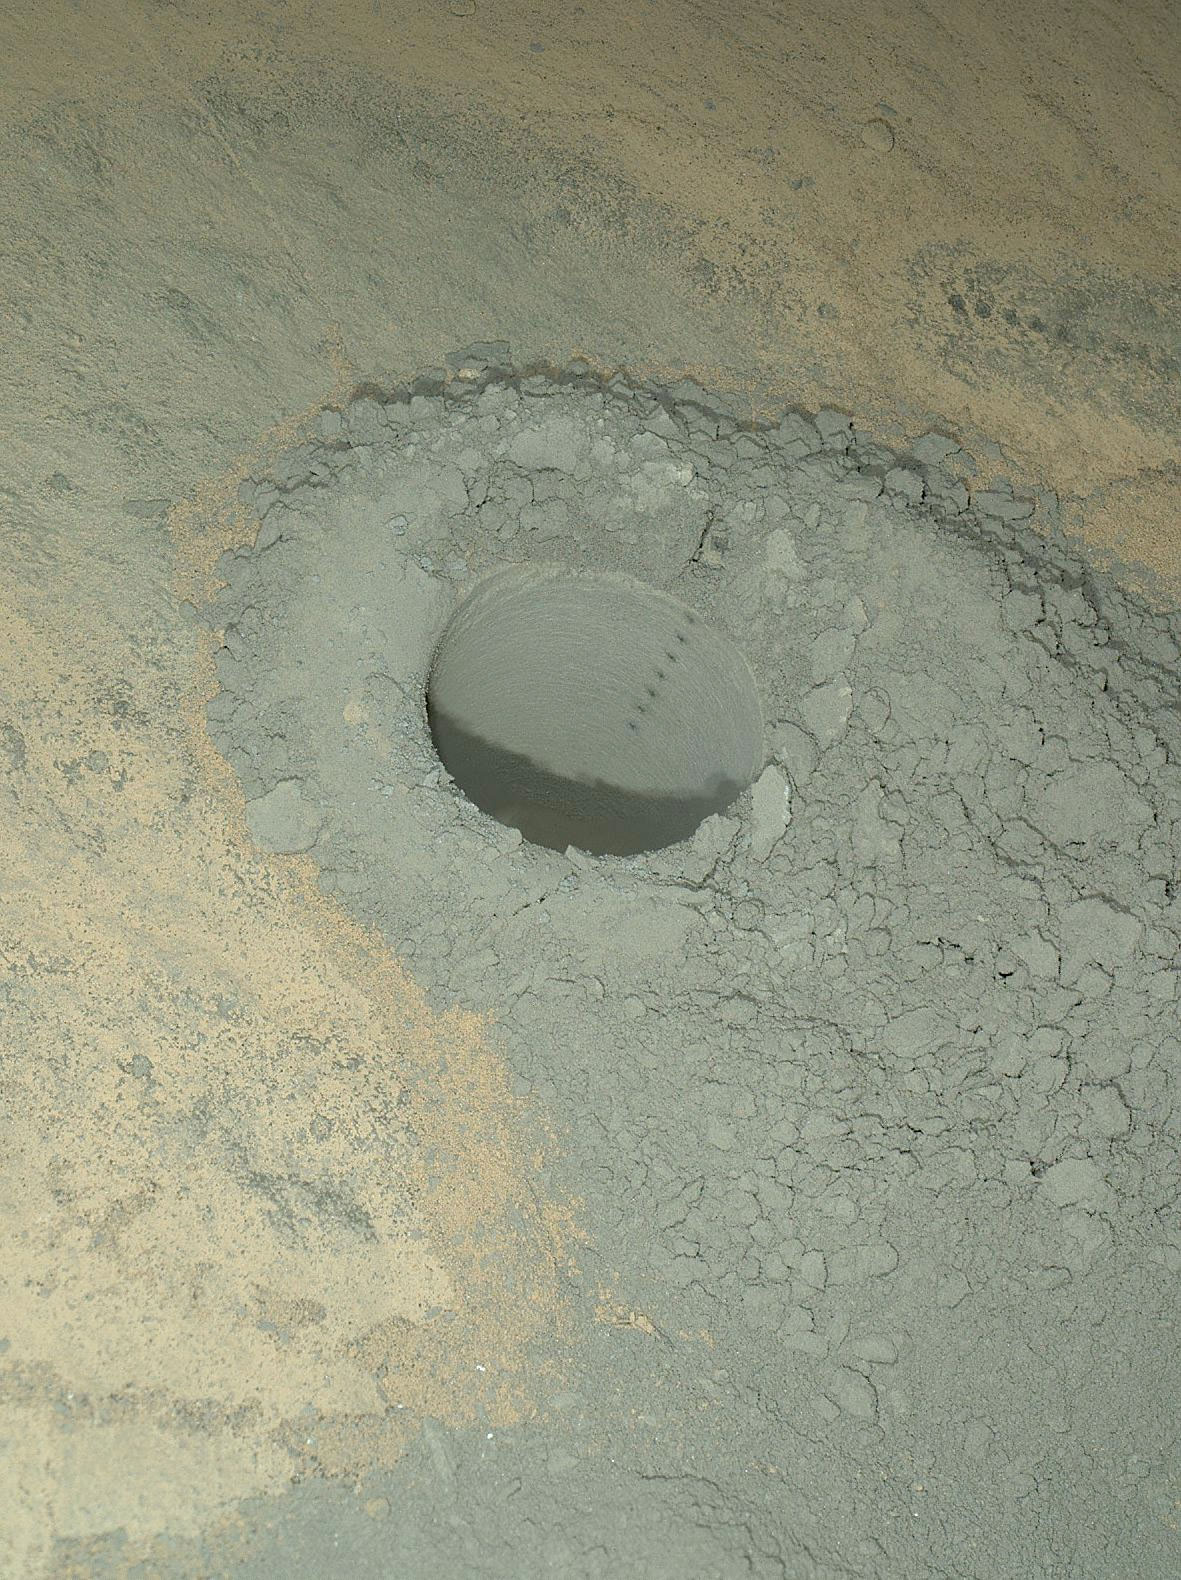 Image acquise par le microscope Mahli du forage le plus récent et les marques laissées par le laser de ChemCam le long de la paroi. Cette combinaison permet de mesurer la composition à l'intérieur de la roche, un peu comme lorsqu'un géologue sur le terrain casse un caillou pour l'observer. © Nasa/JPL-Caltech/MSSS